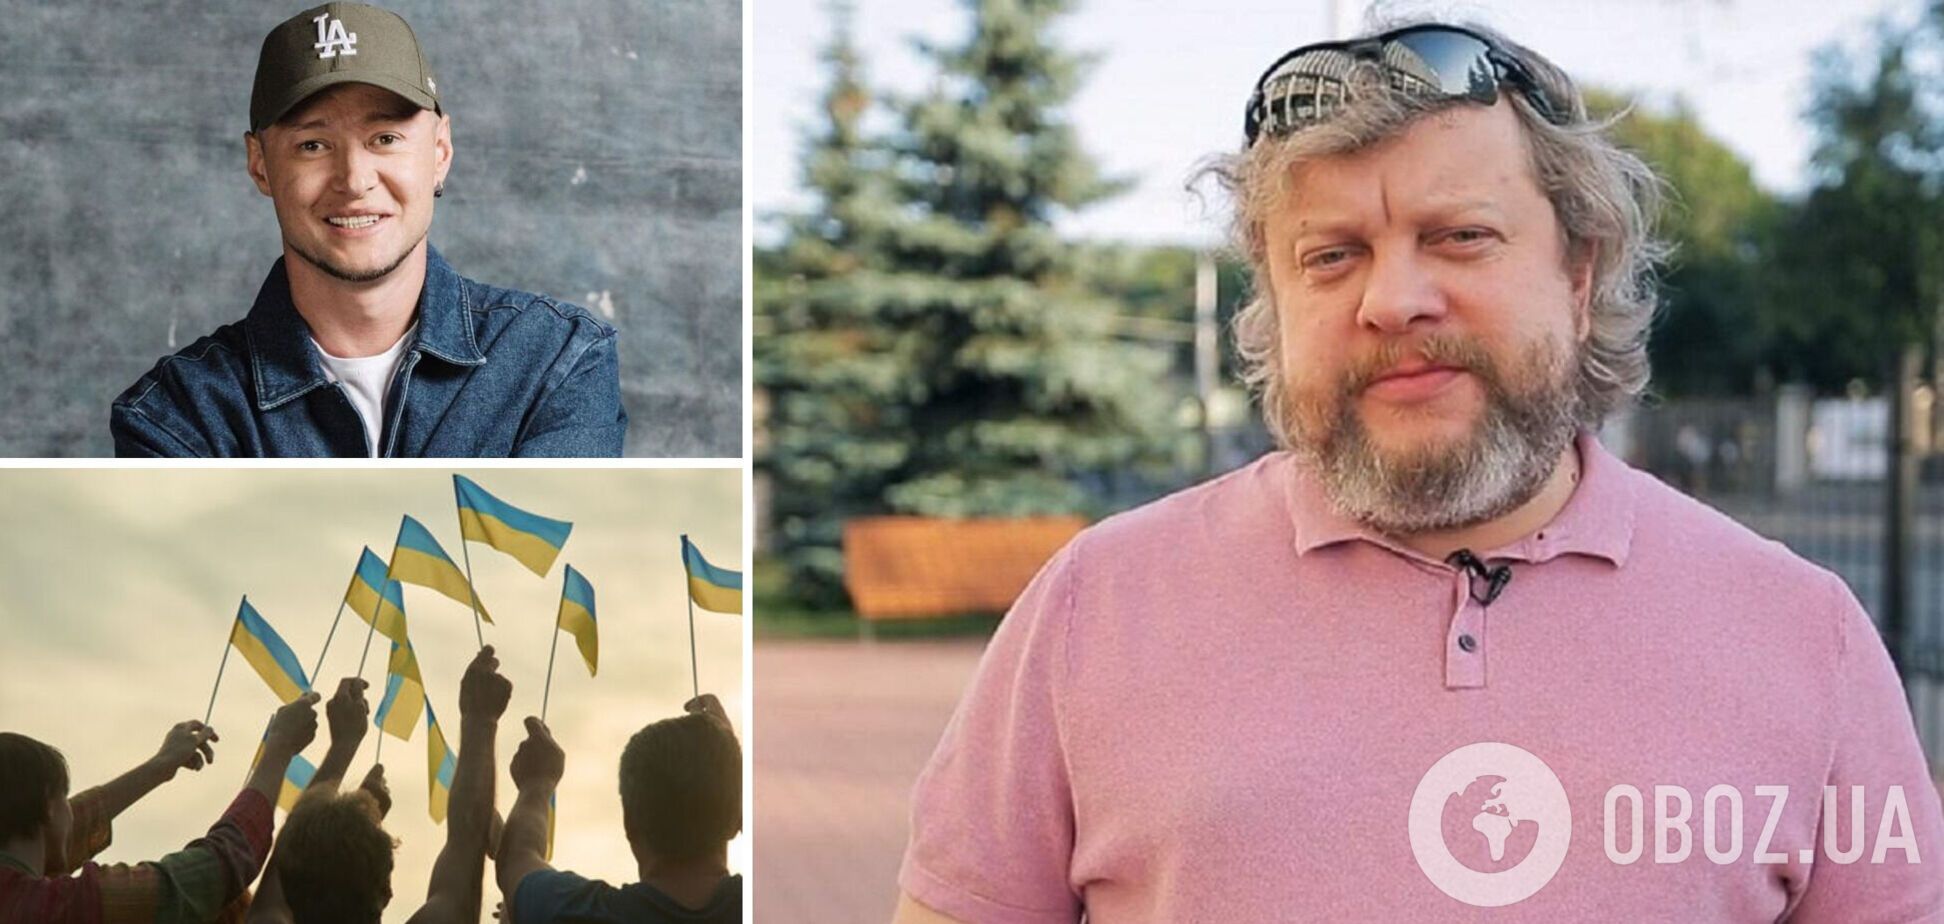 'Кримські кретини': російський коментатор поставив діагноз окупантам, які вимагають заборонити 'Червону калину'